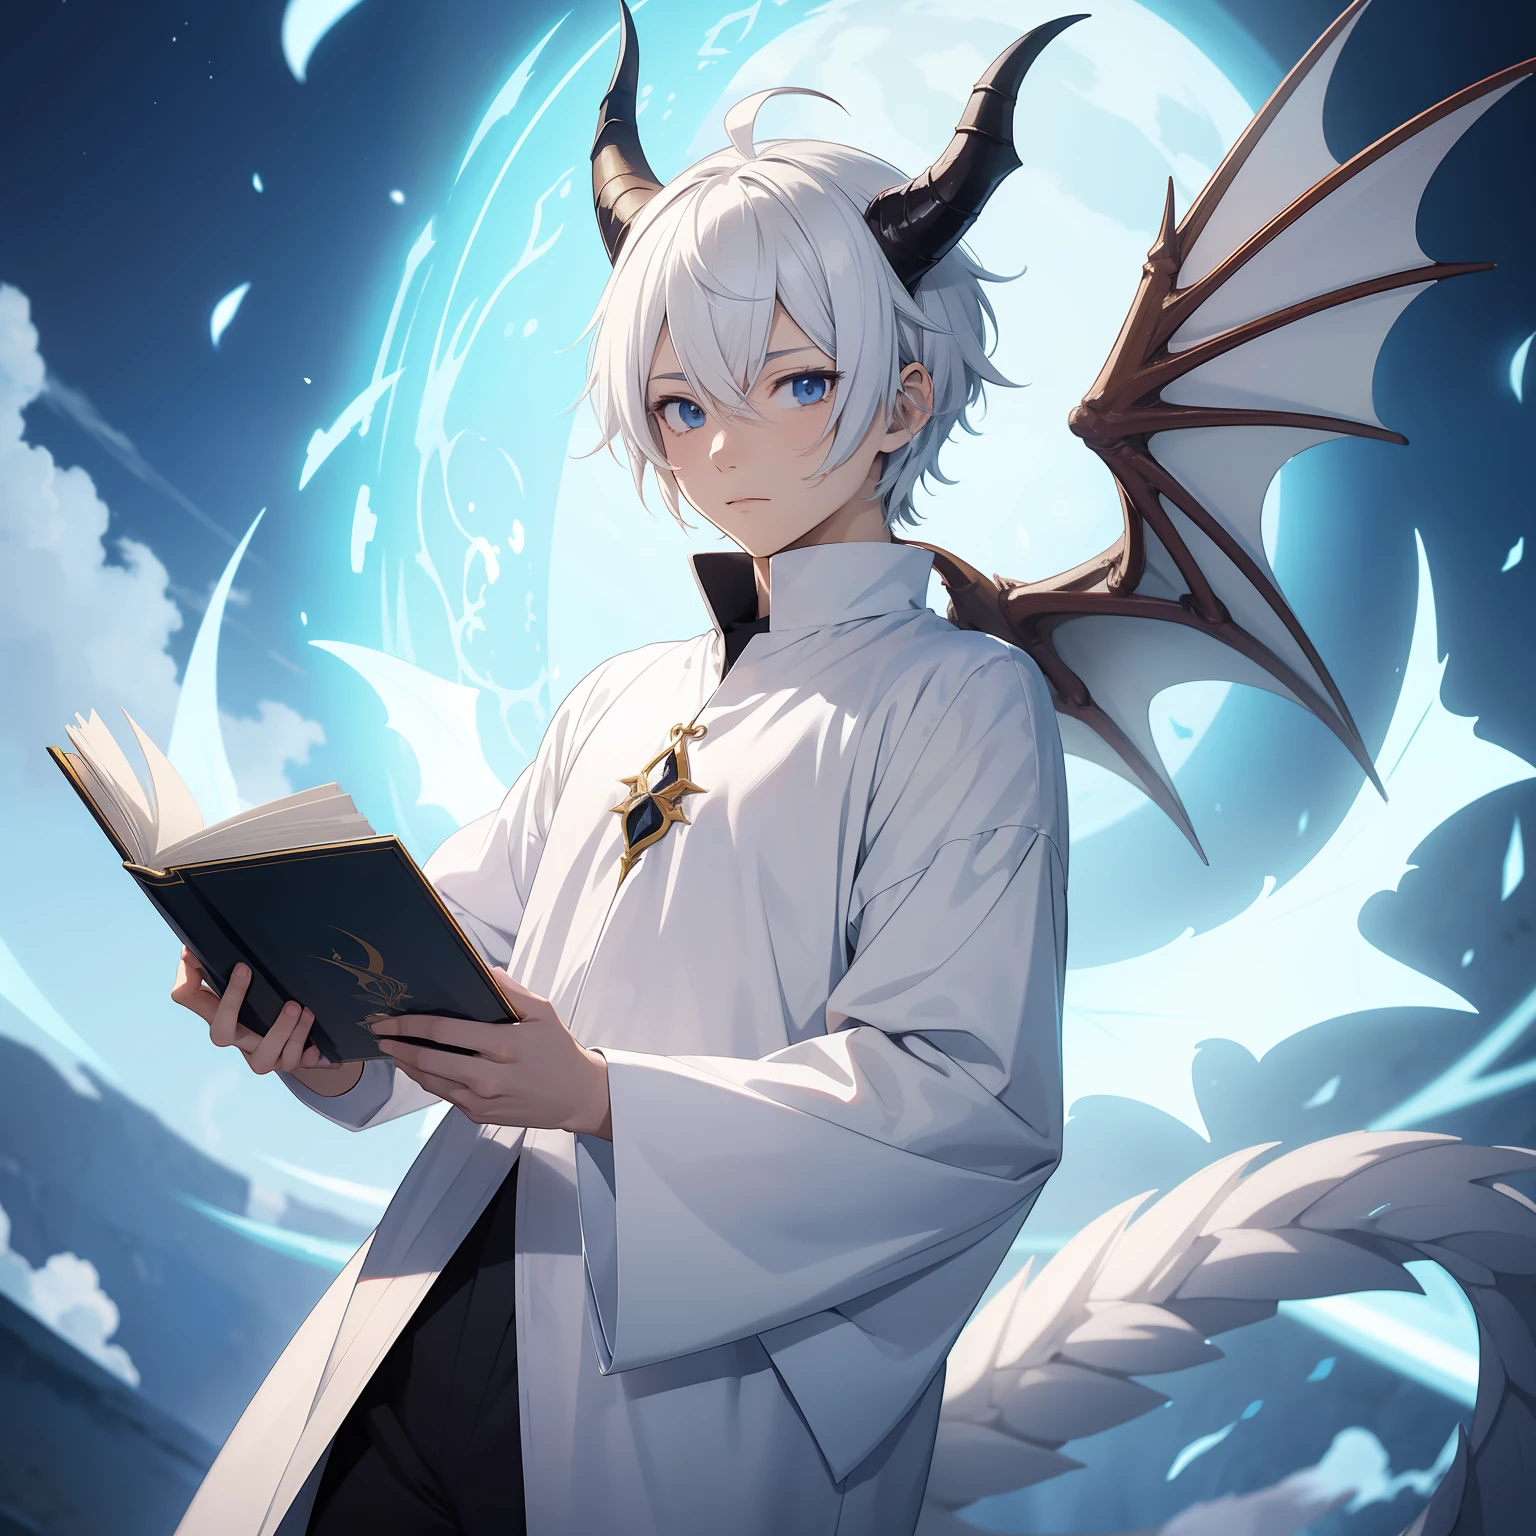 浮かんでいる本を持っている白い魔術師の服を着たアニメの少年, ドラゴンの角, ドラゴンテール, 短い白い髪